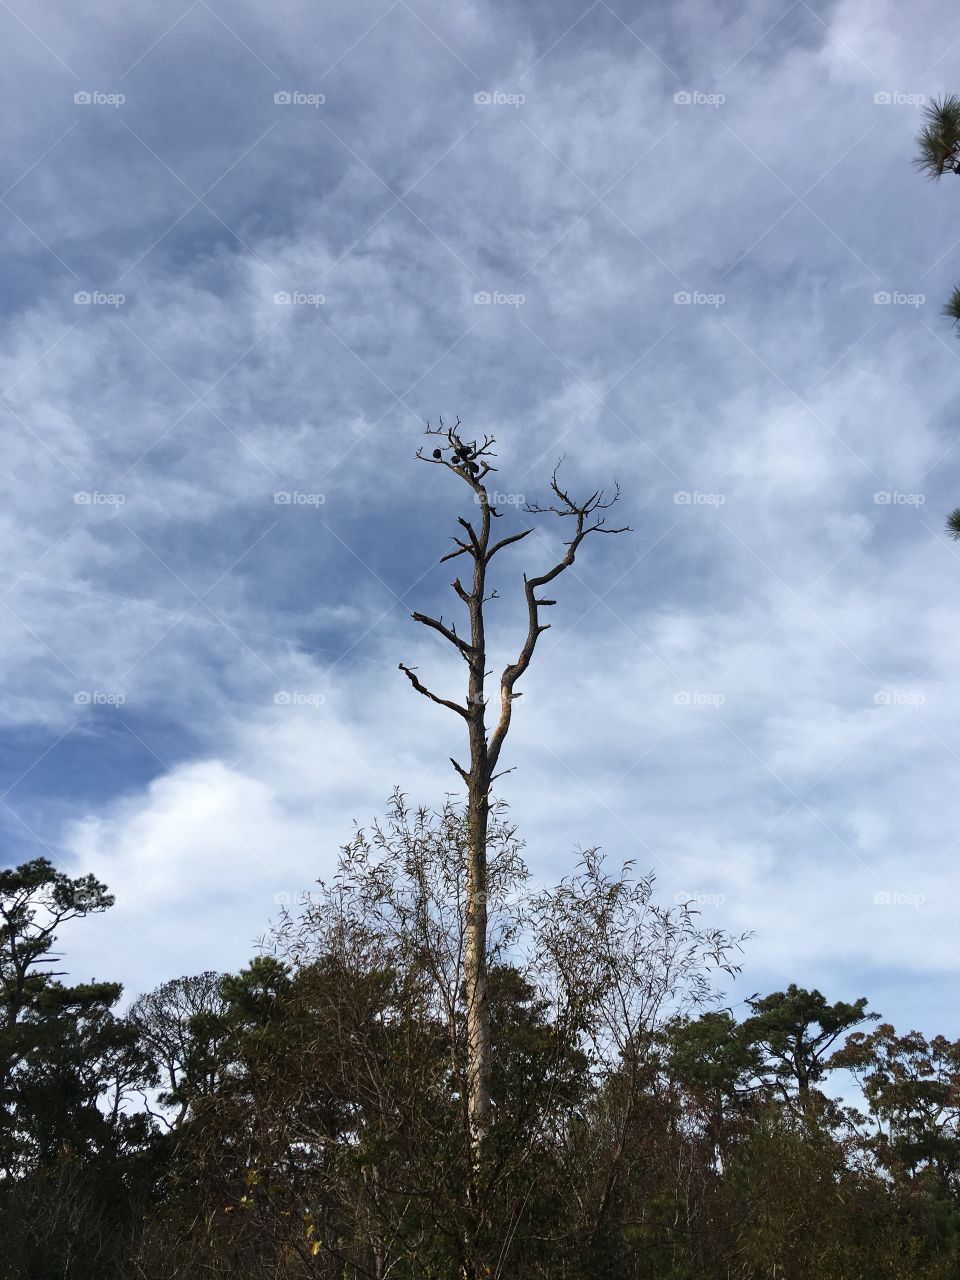 Blackbirds in dead tree